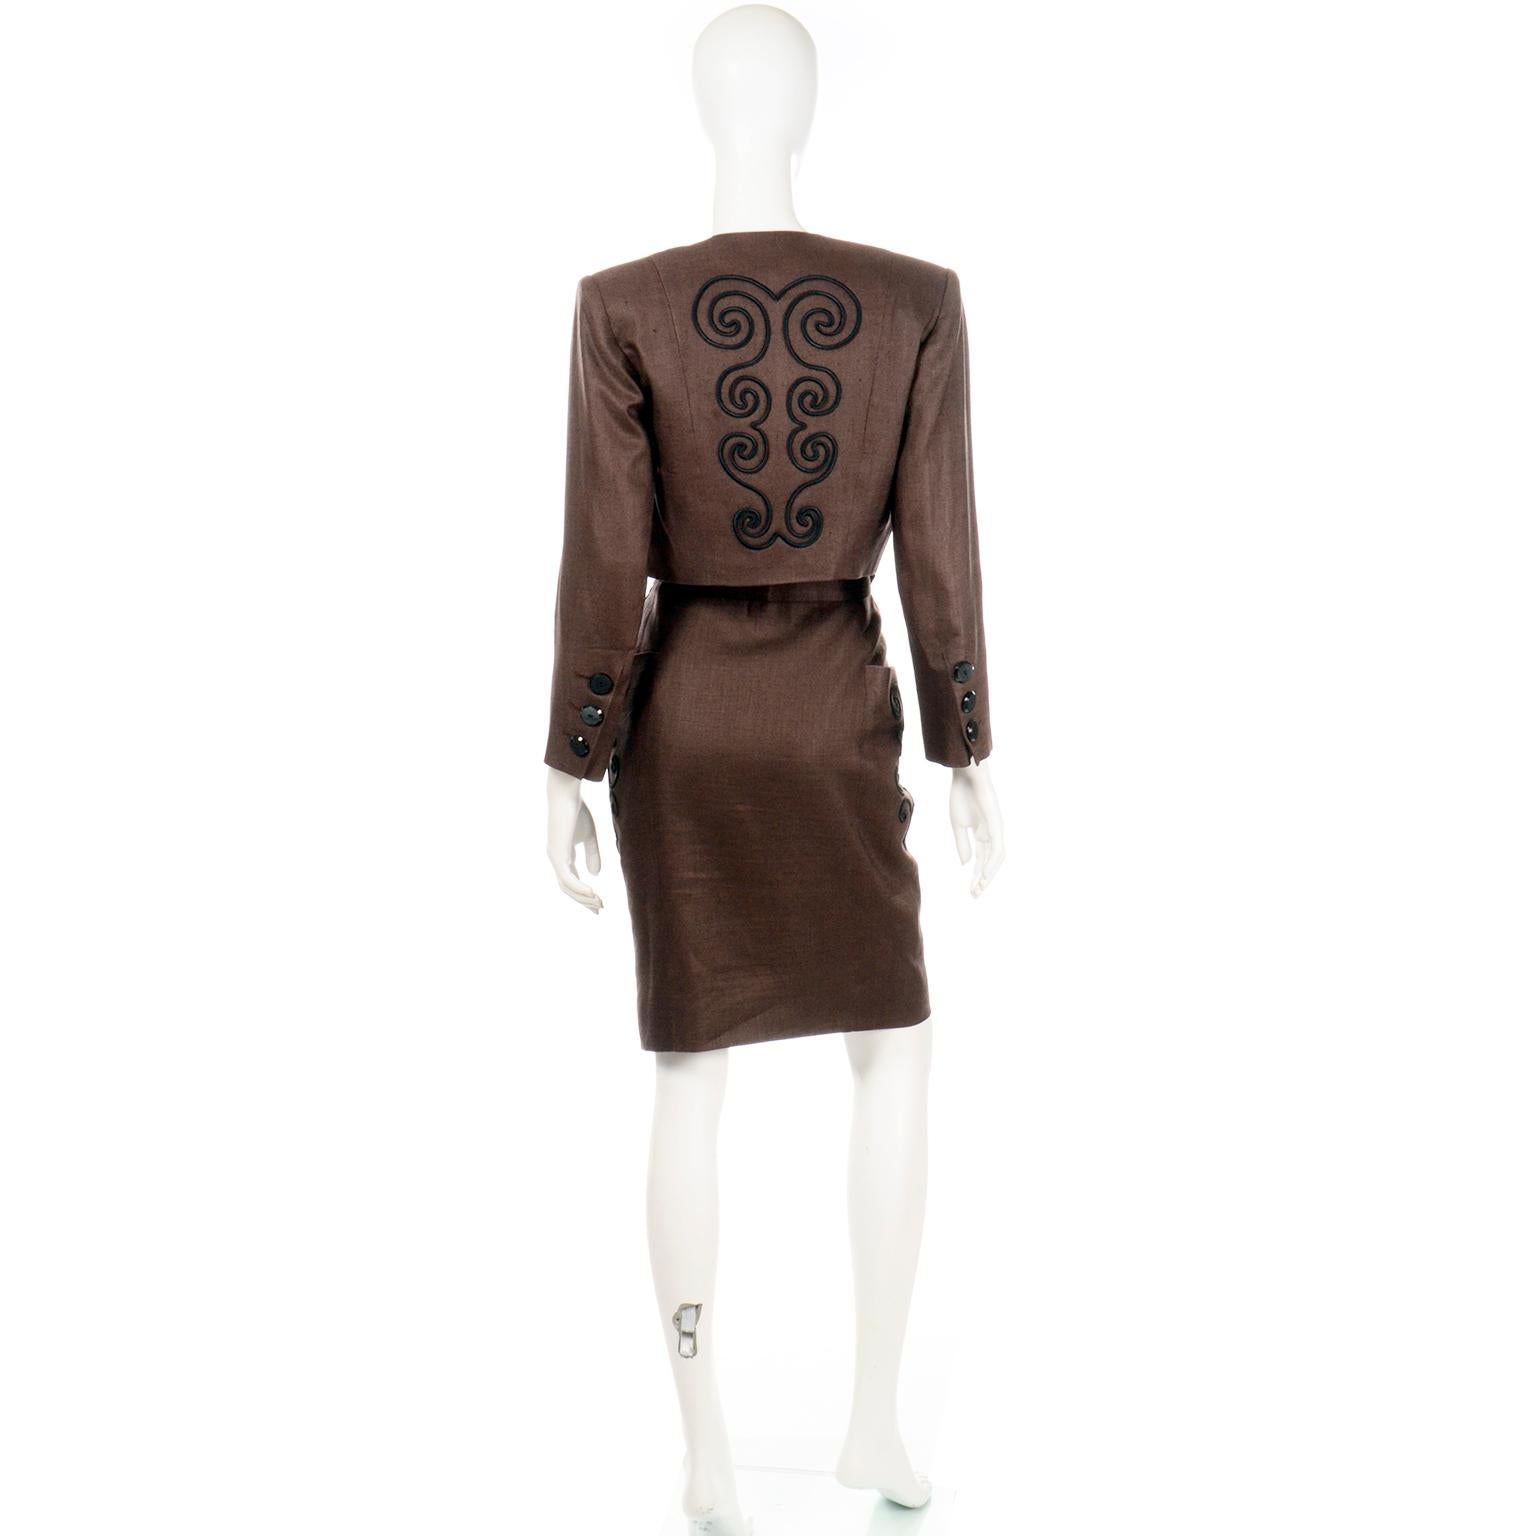 Costume vintage Yves Saint Laurent des années 1980, veste et jupe en lin brun. Le tissu marron luxueux ressemble à un mélange de rayonne et de lin, avec une doublure marron et des boutons noirs. Nous aimons particulièrement la broderie noire